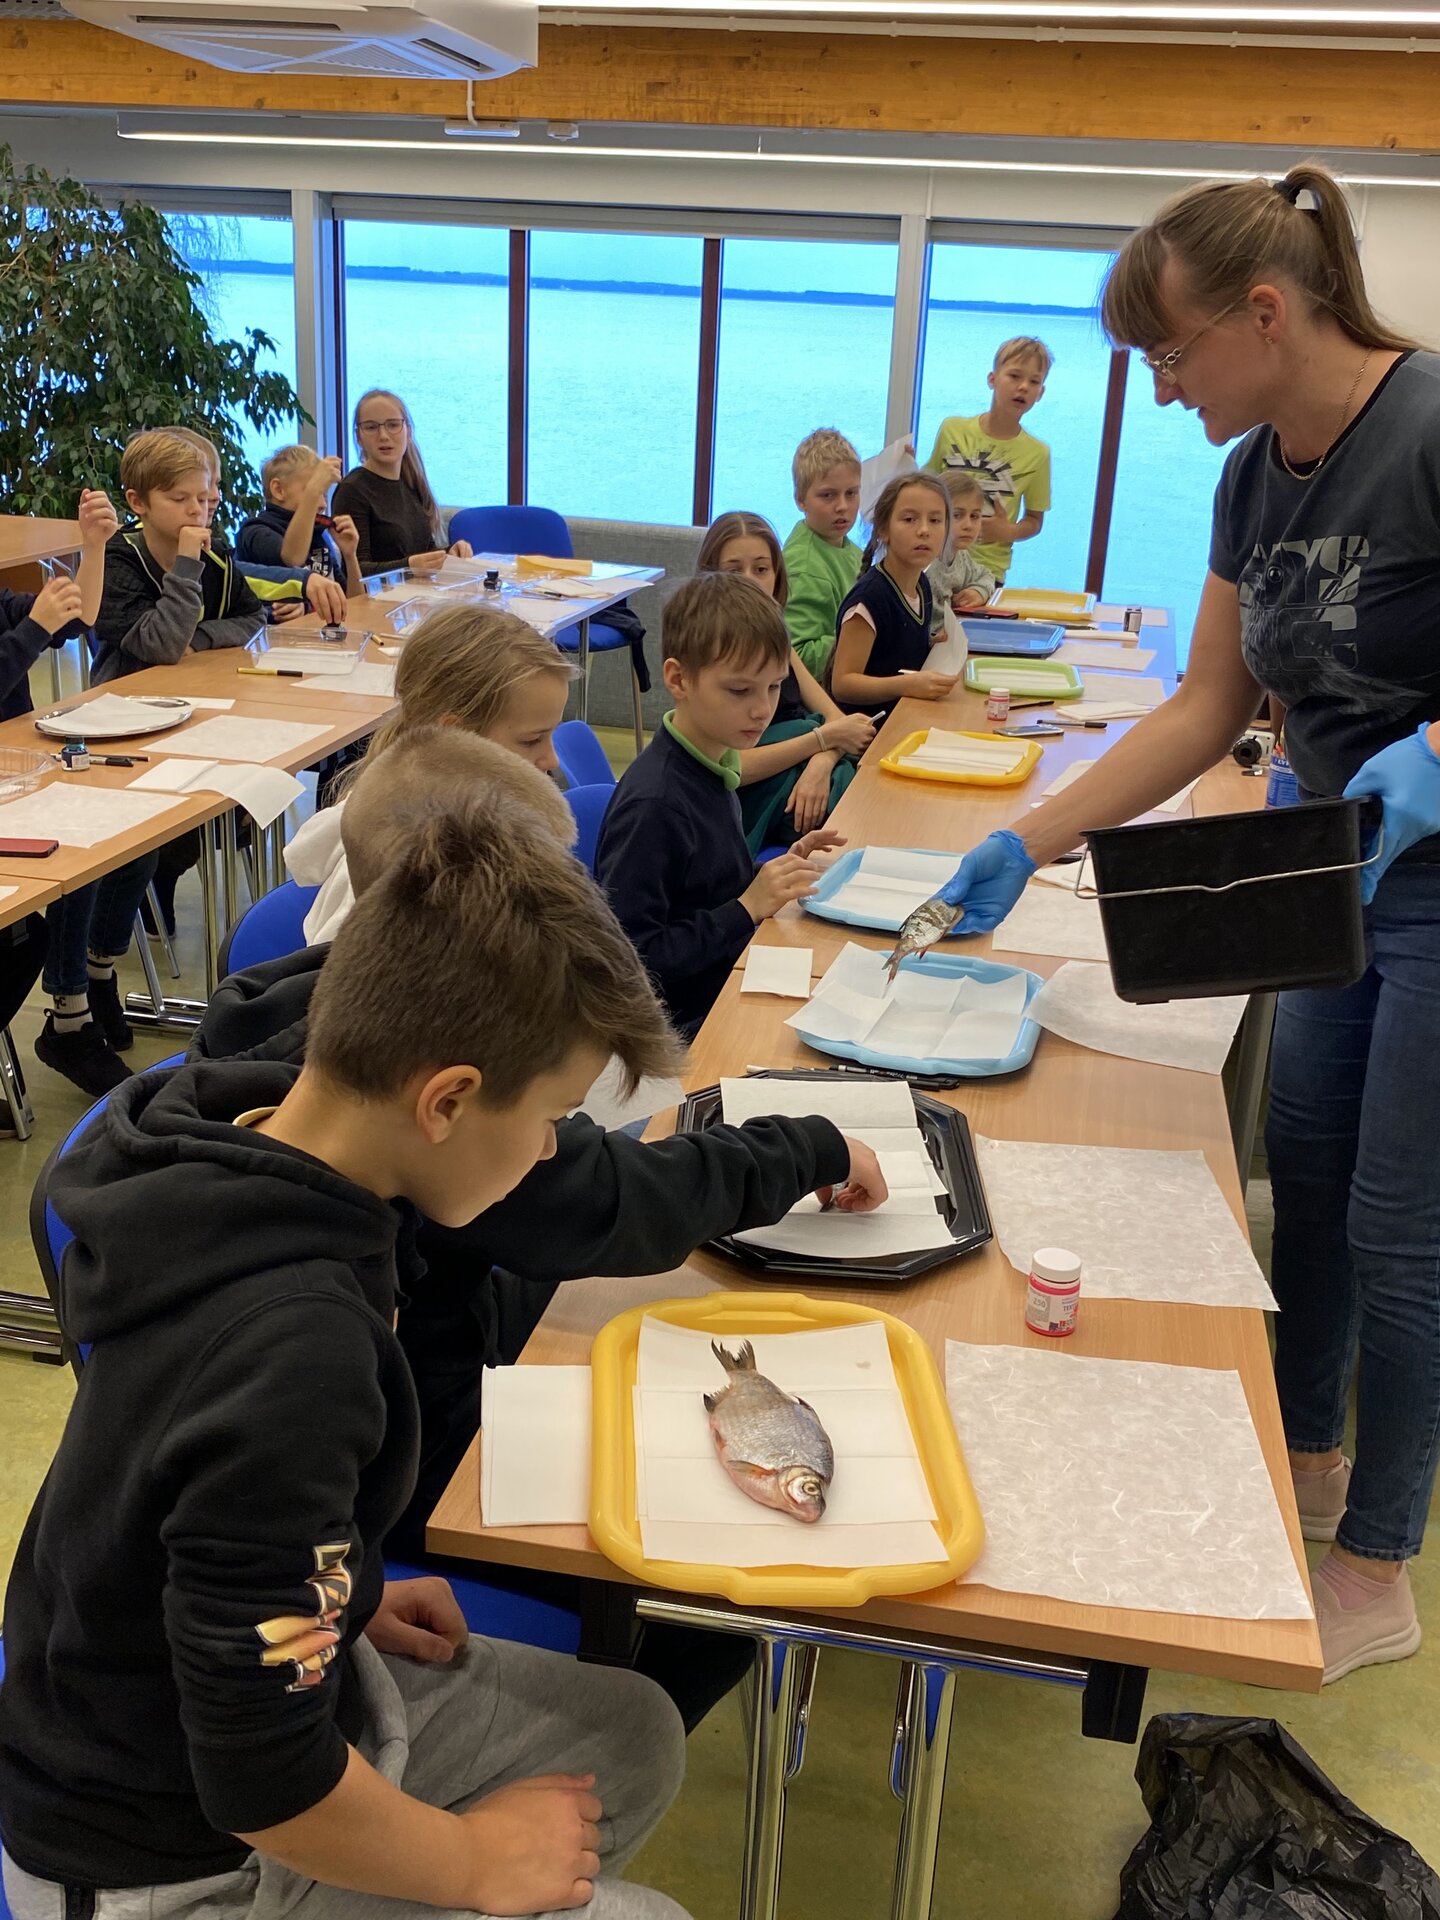 õppeprogramm kalad järvemuuseum muuseum akva:rium lapsed kala Võrtsjärv